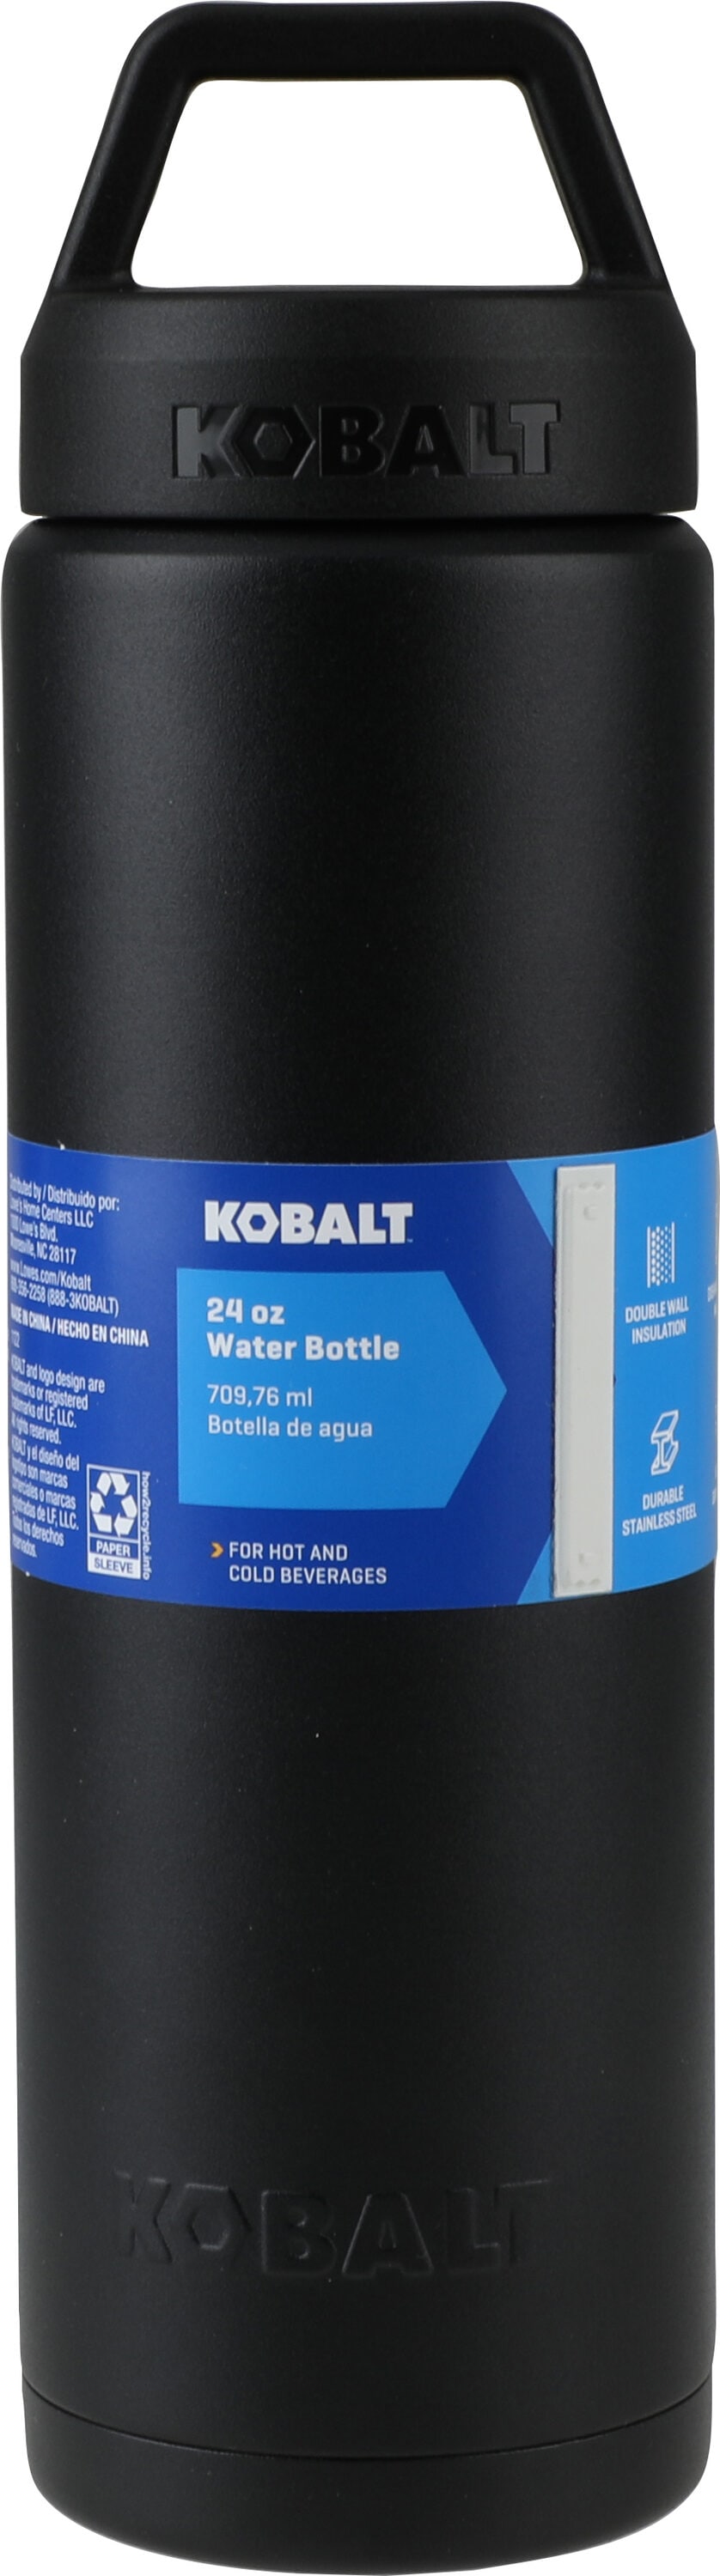 Kobalt Stainless Steel Insulated Tumbler - Blue - 30 fl oz